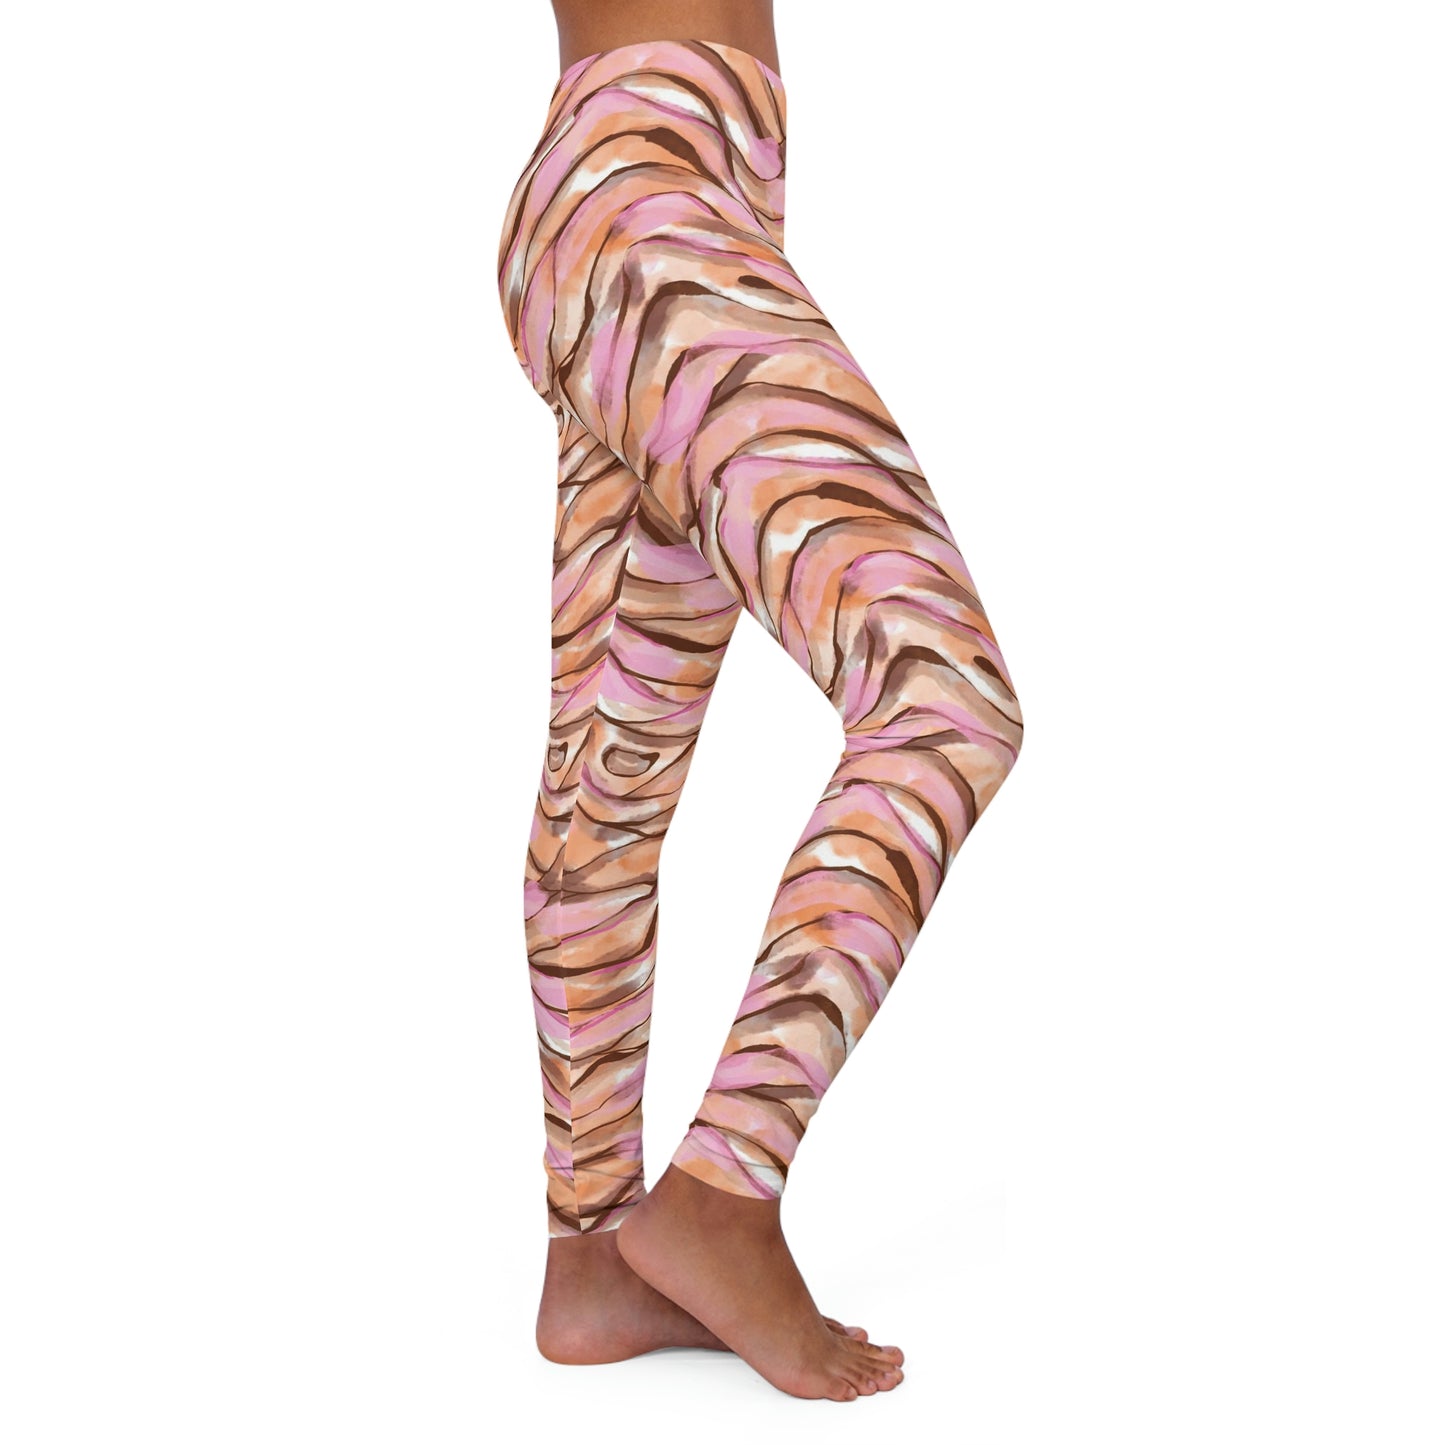 Animal Print Women's Spandex Leggings, tiger look leggings, Acrobatics pants , Yoga spandex,